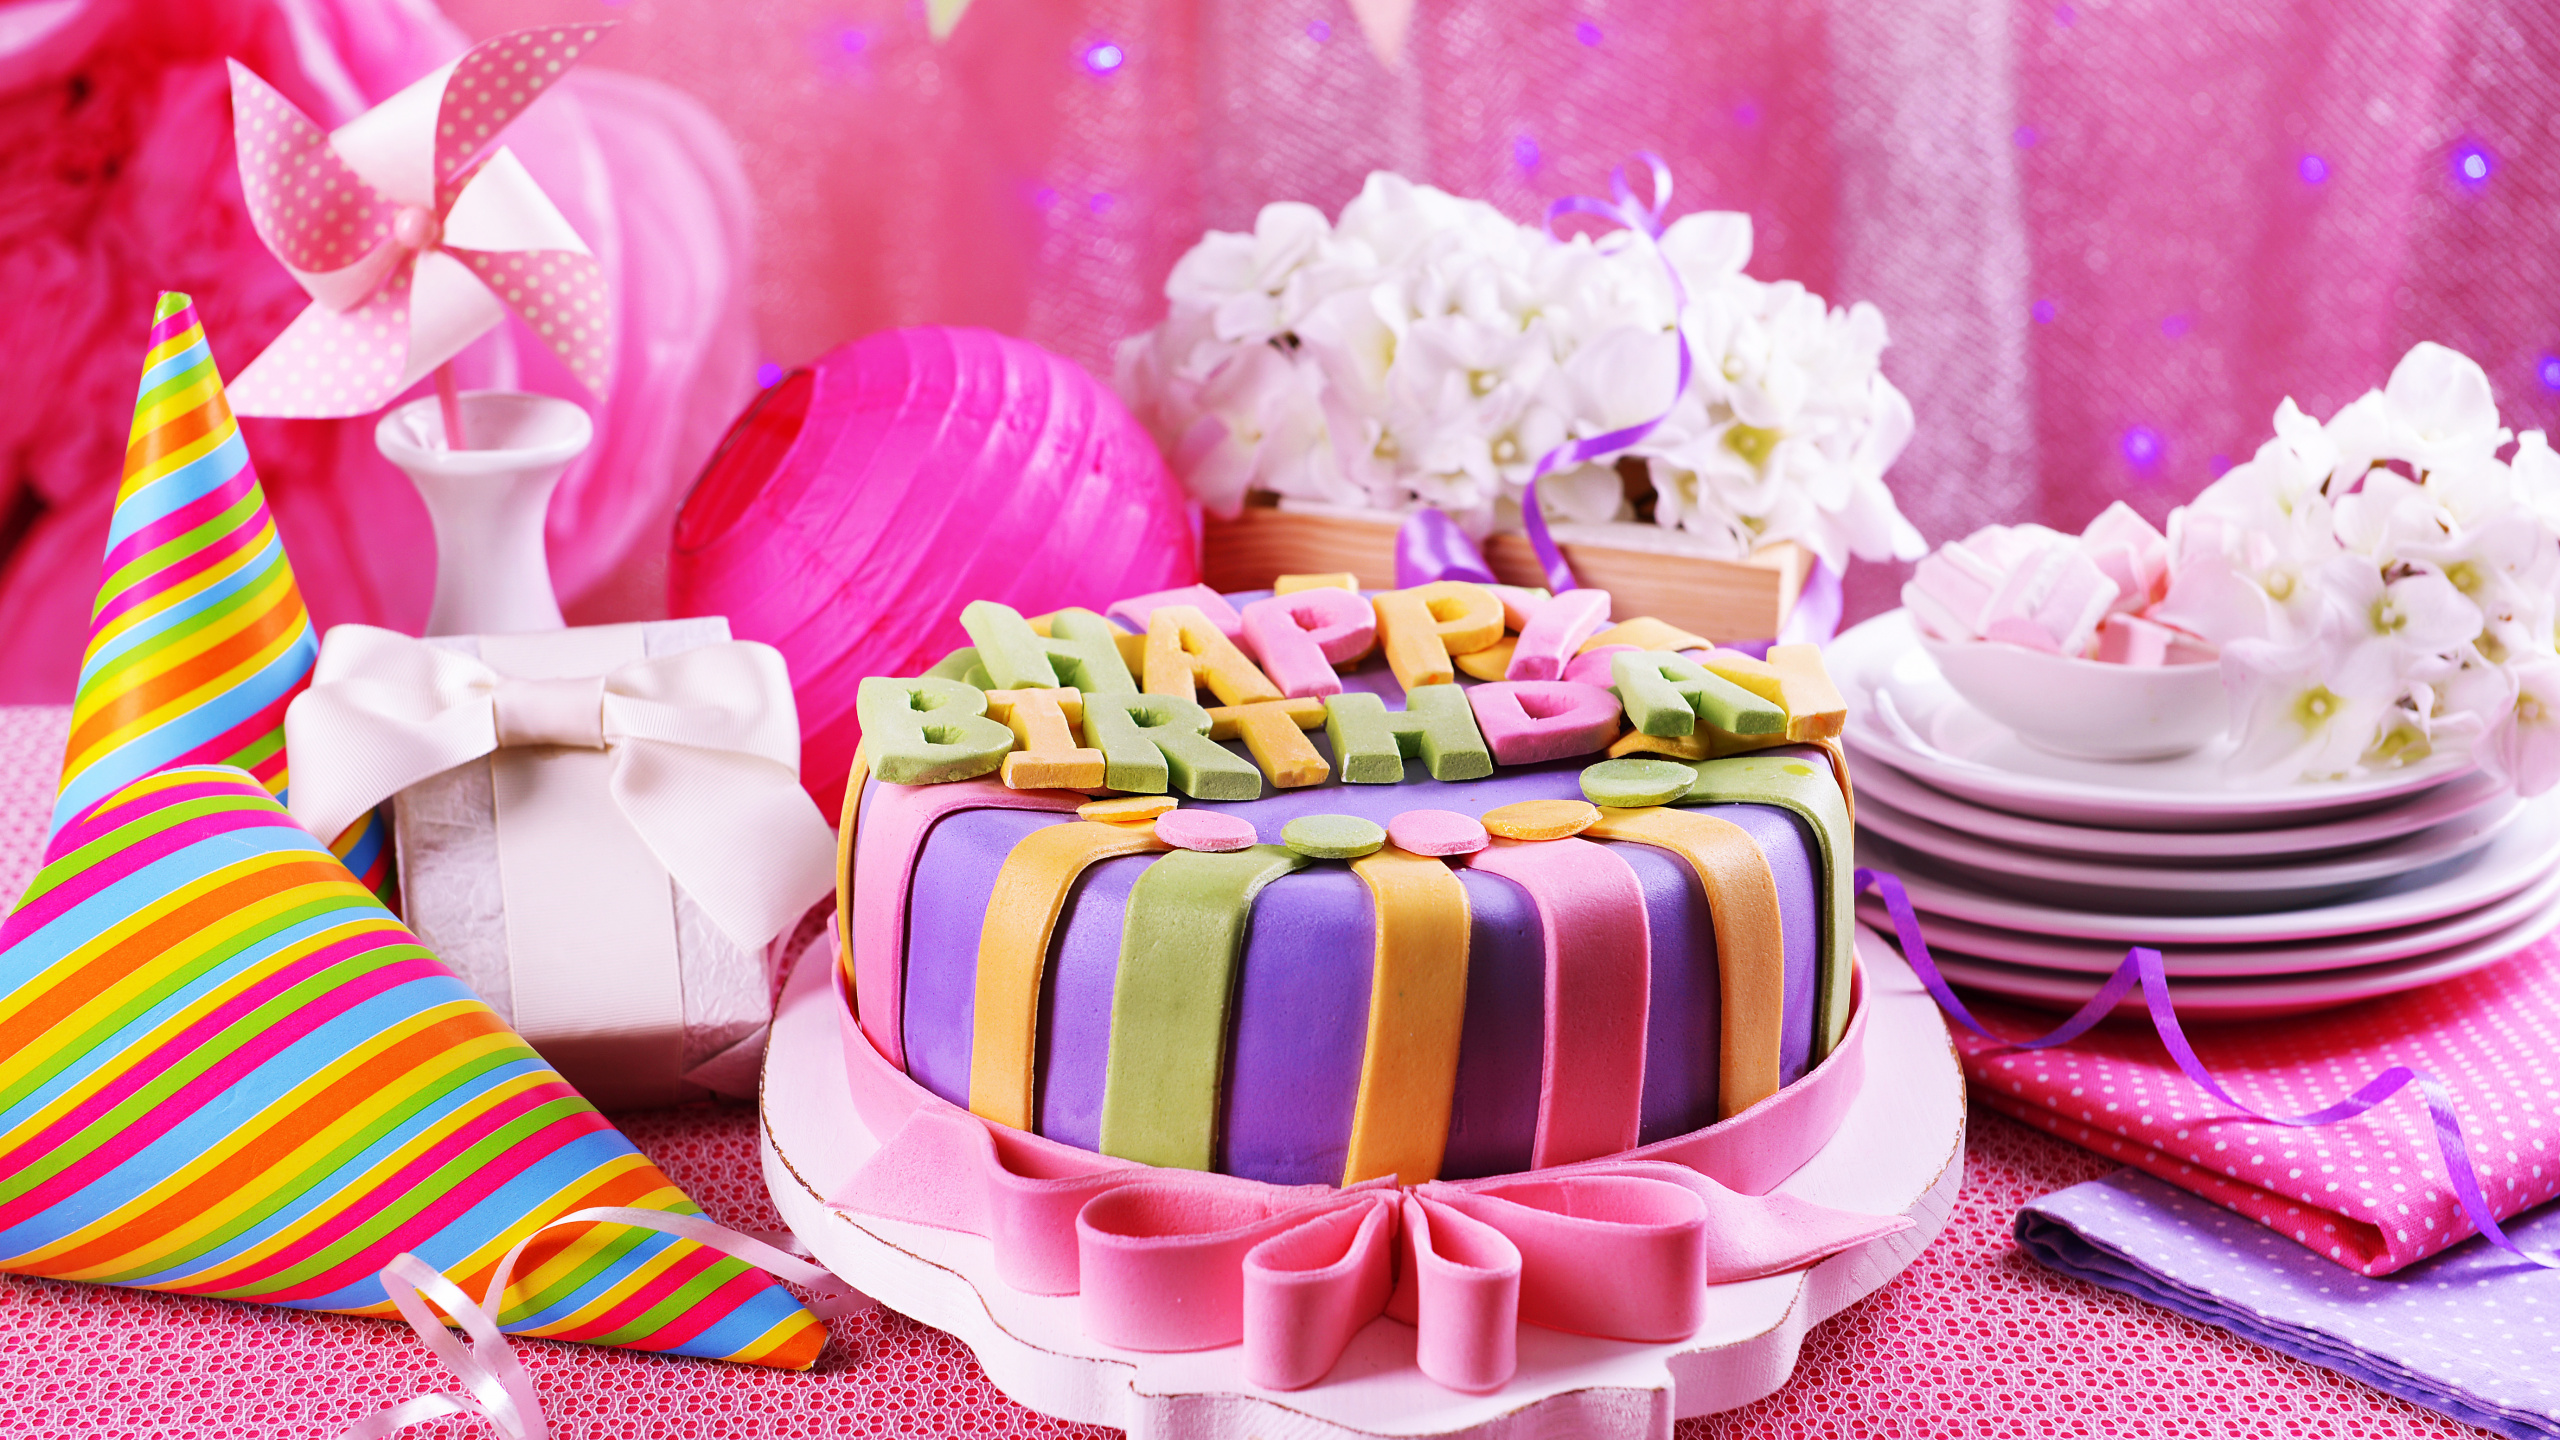 生日, 缔约方, 生日蛋糕, 食品, 甜头 壁纸 2560x1440 允许